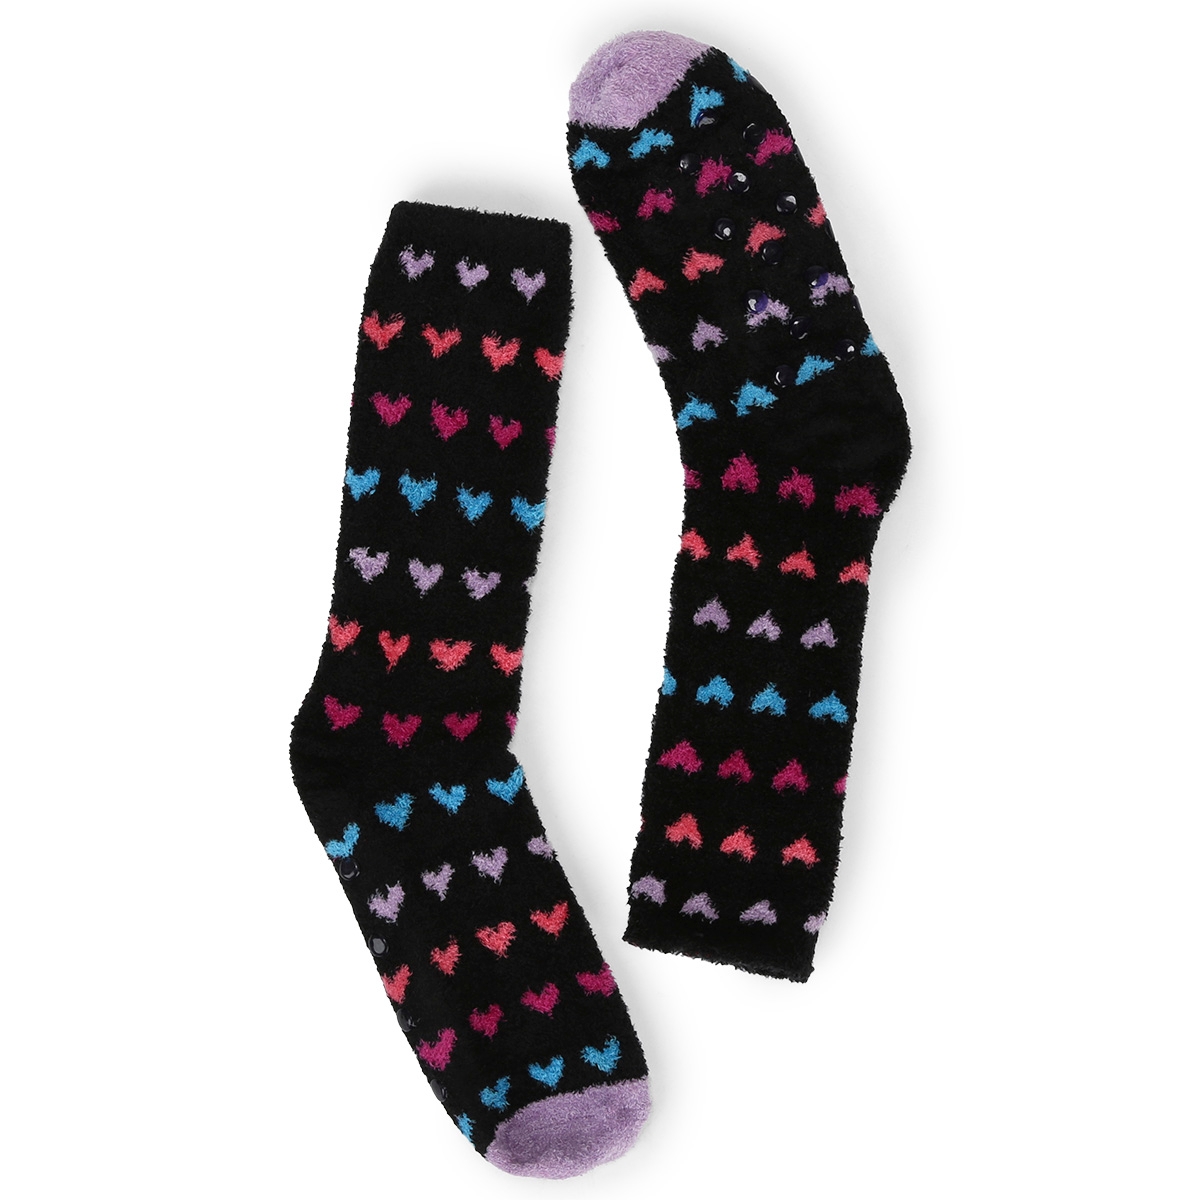 Women's Heart Printed Slipper Sock - Black